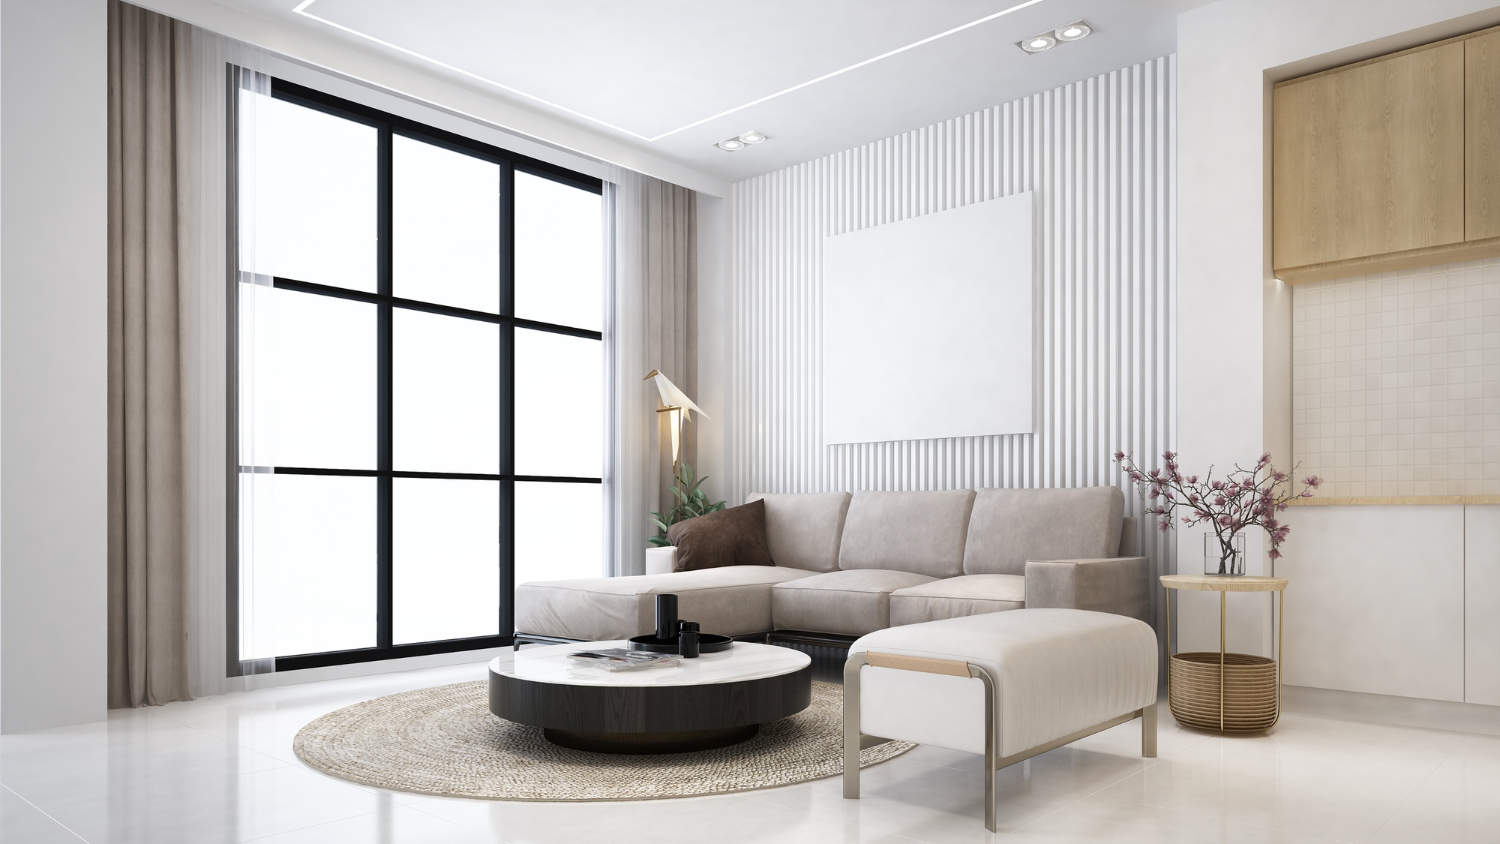 Perpaduan plafon minimalis dan interior modern menjadikan ruangan teras sleek dan lega.